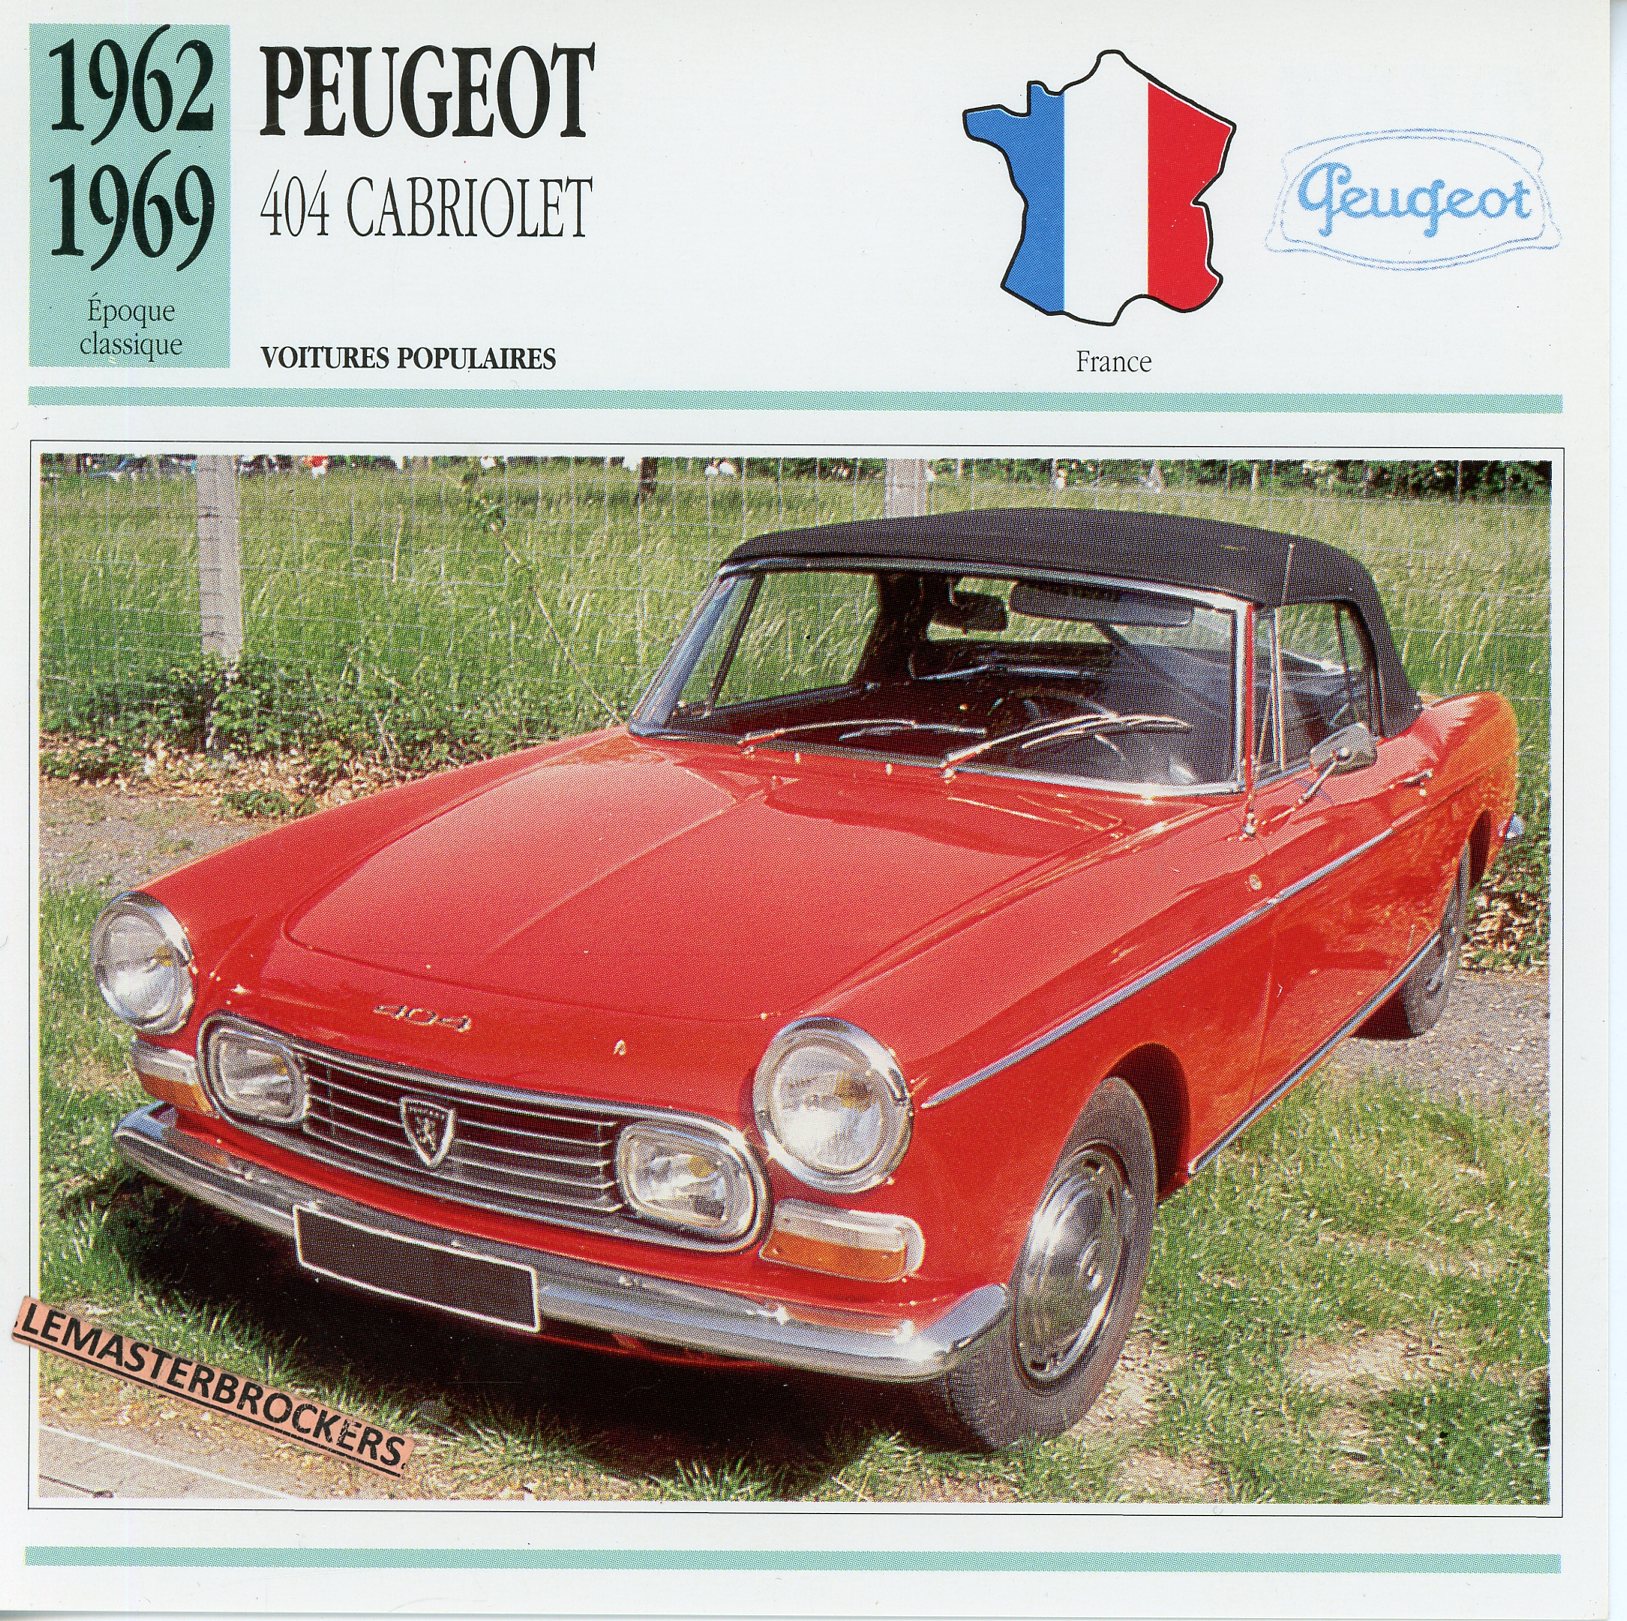 PEUGEOT-404-CABRIOLET-1962-1969-FICHE-AUTO-ATLAS-LEMASTERBROCKERS